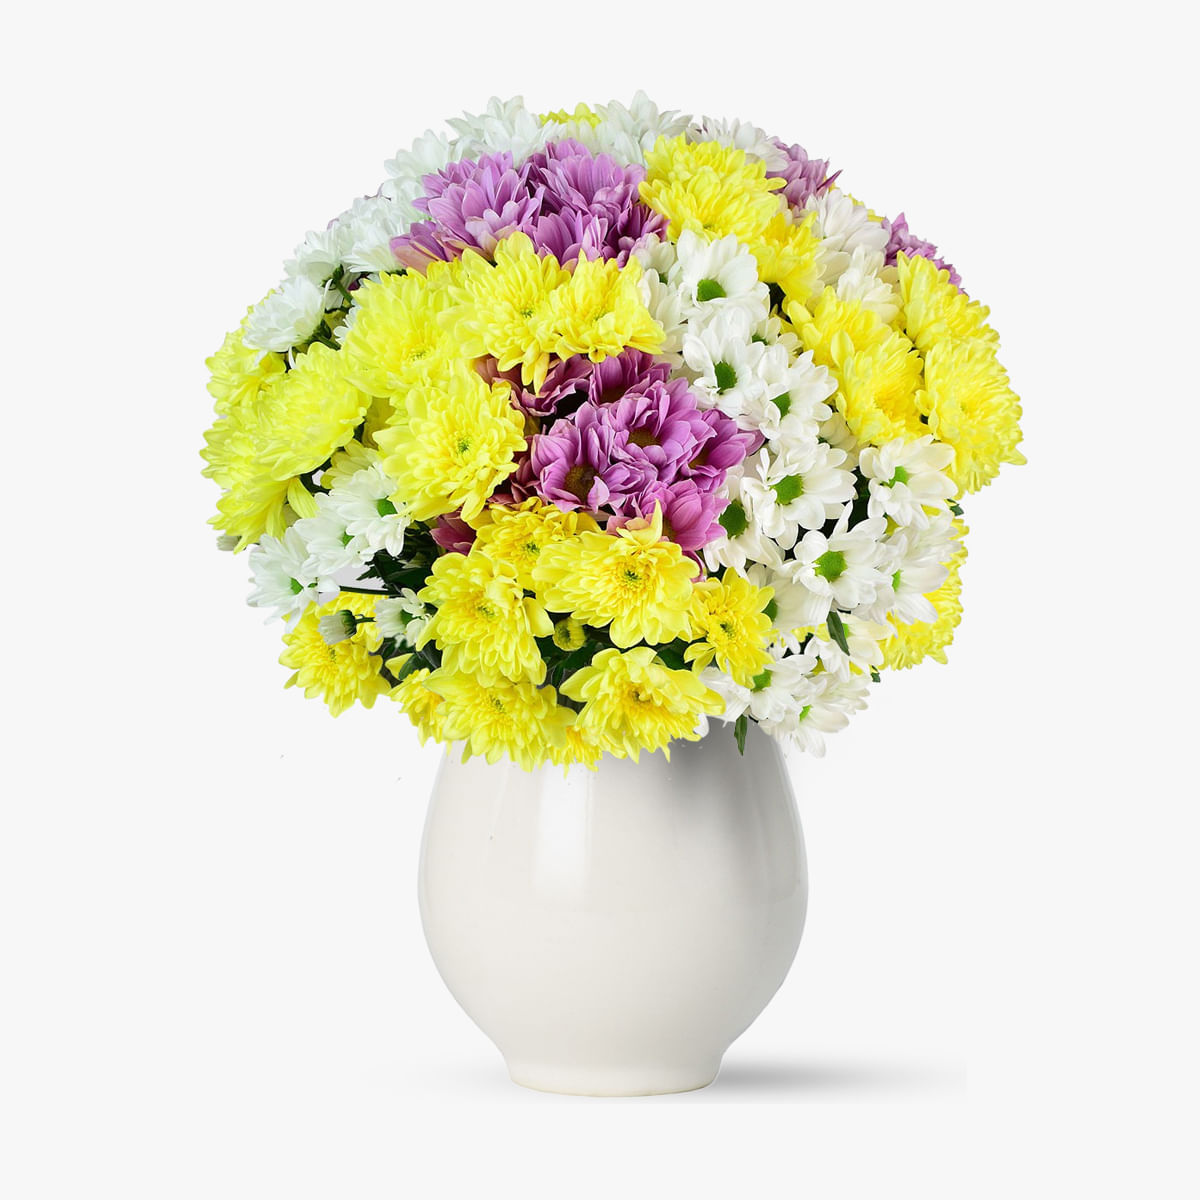 Buchet de 45 crizanteme multicolore – Standard Buchet imagine 2022